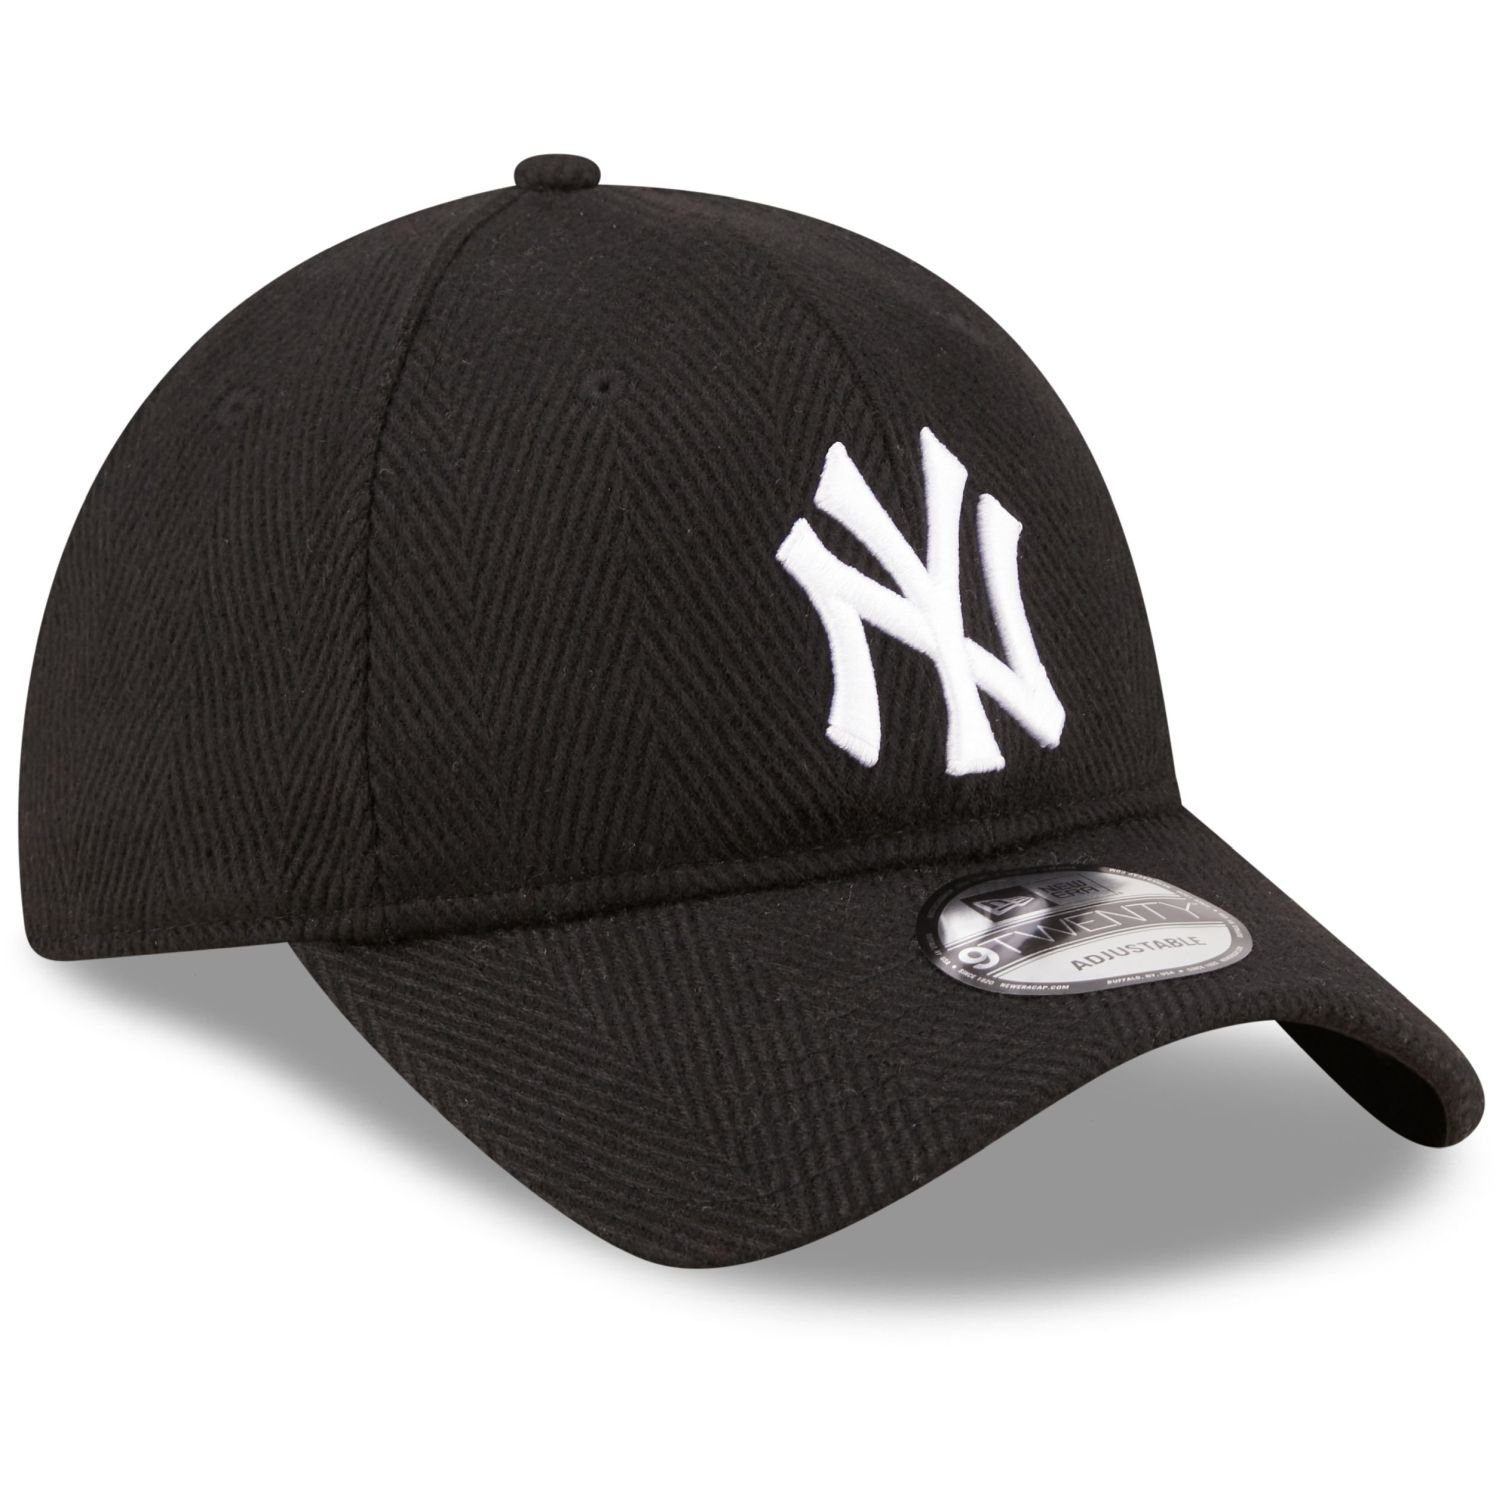 New New Yankees Era Cap Baseball 9Twenty York schwarz